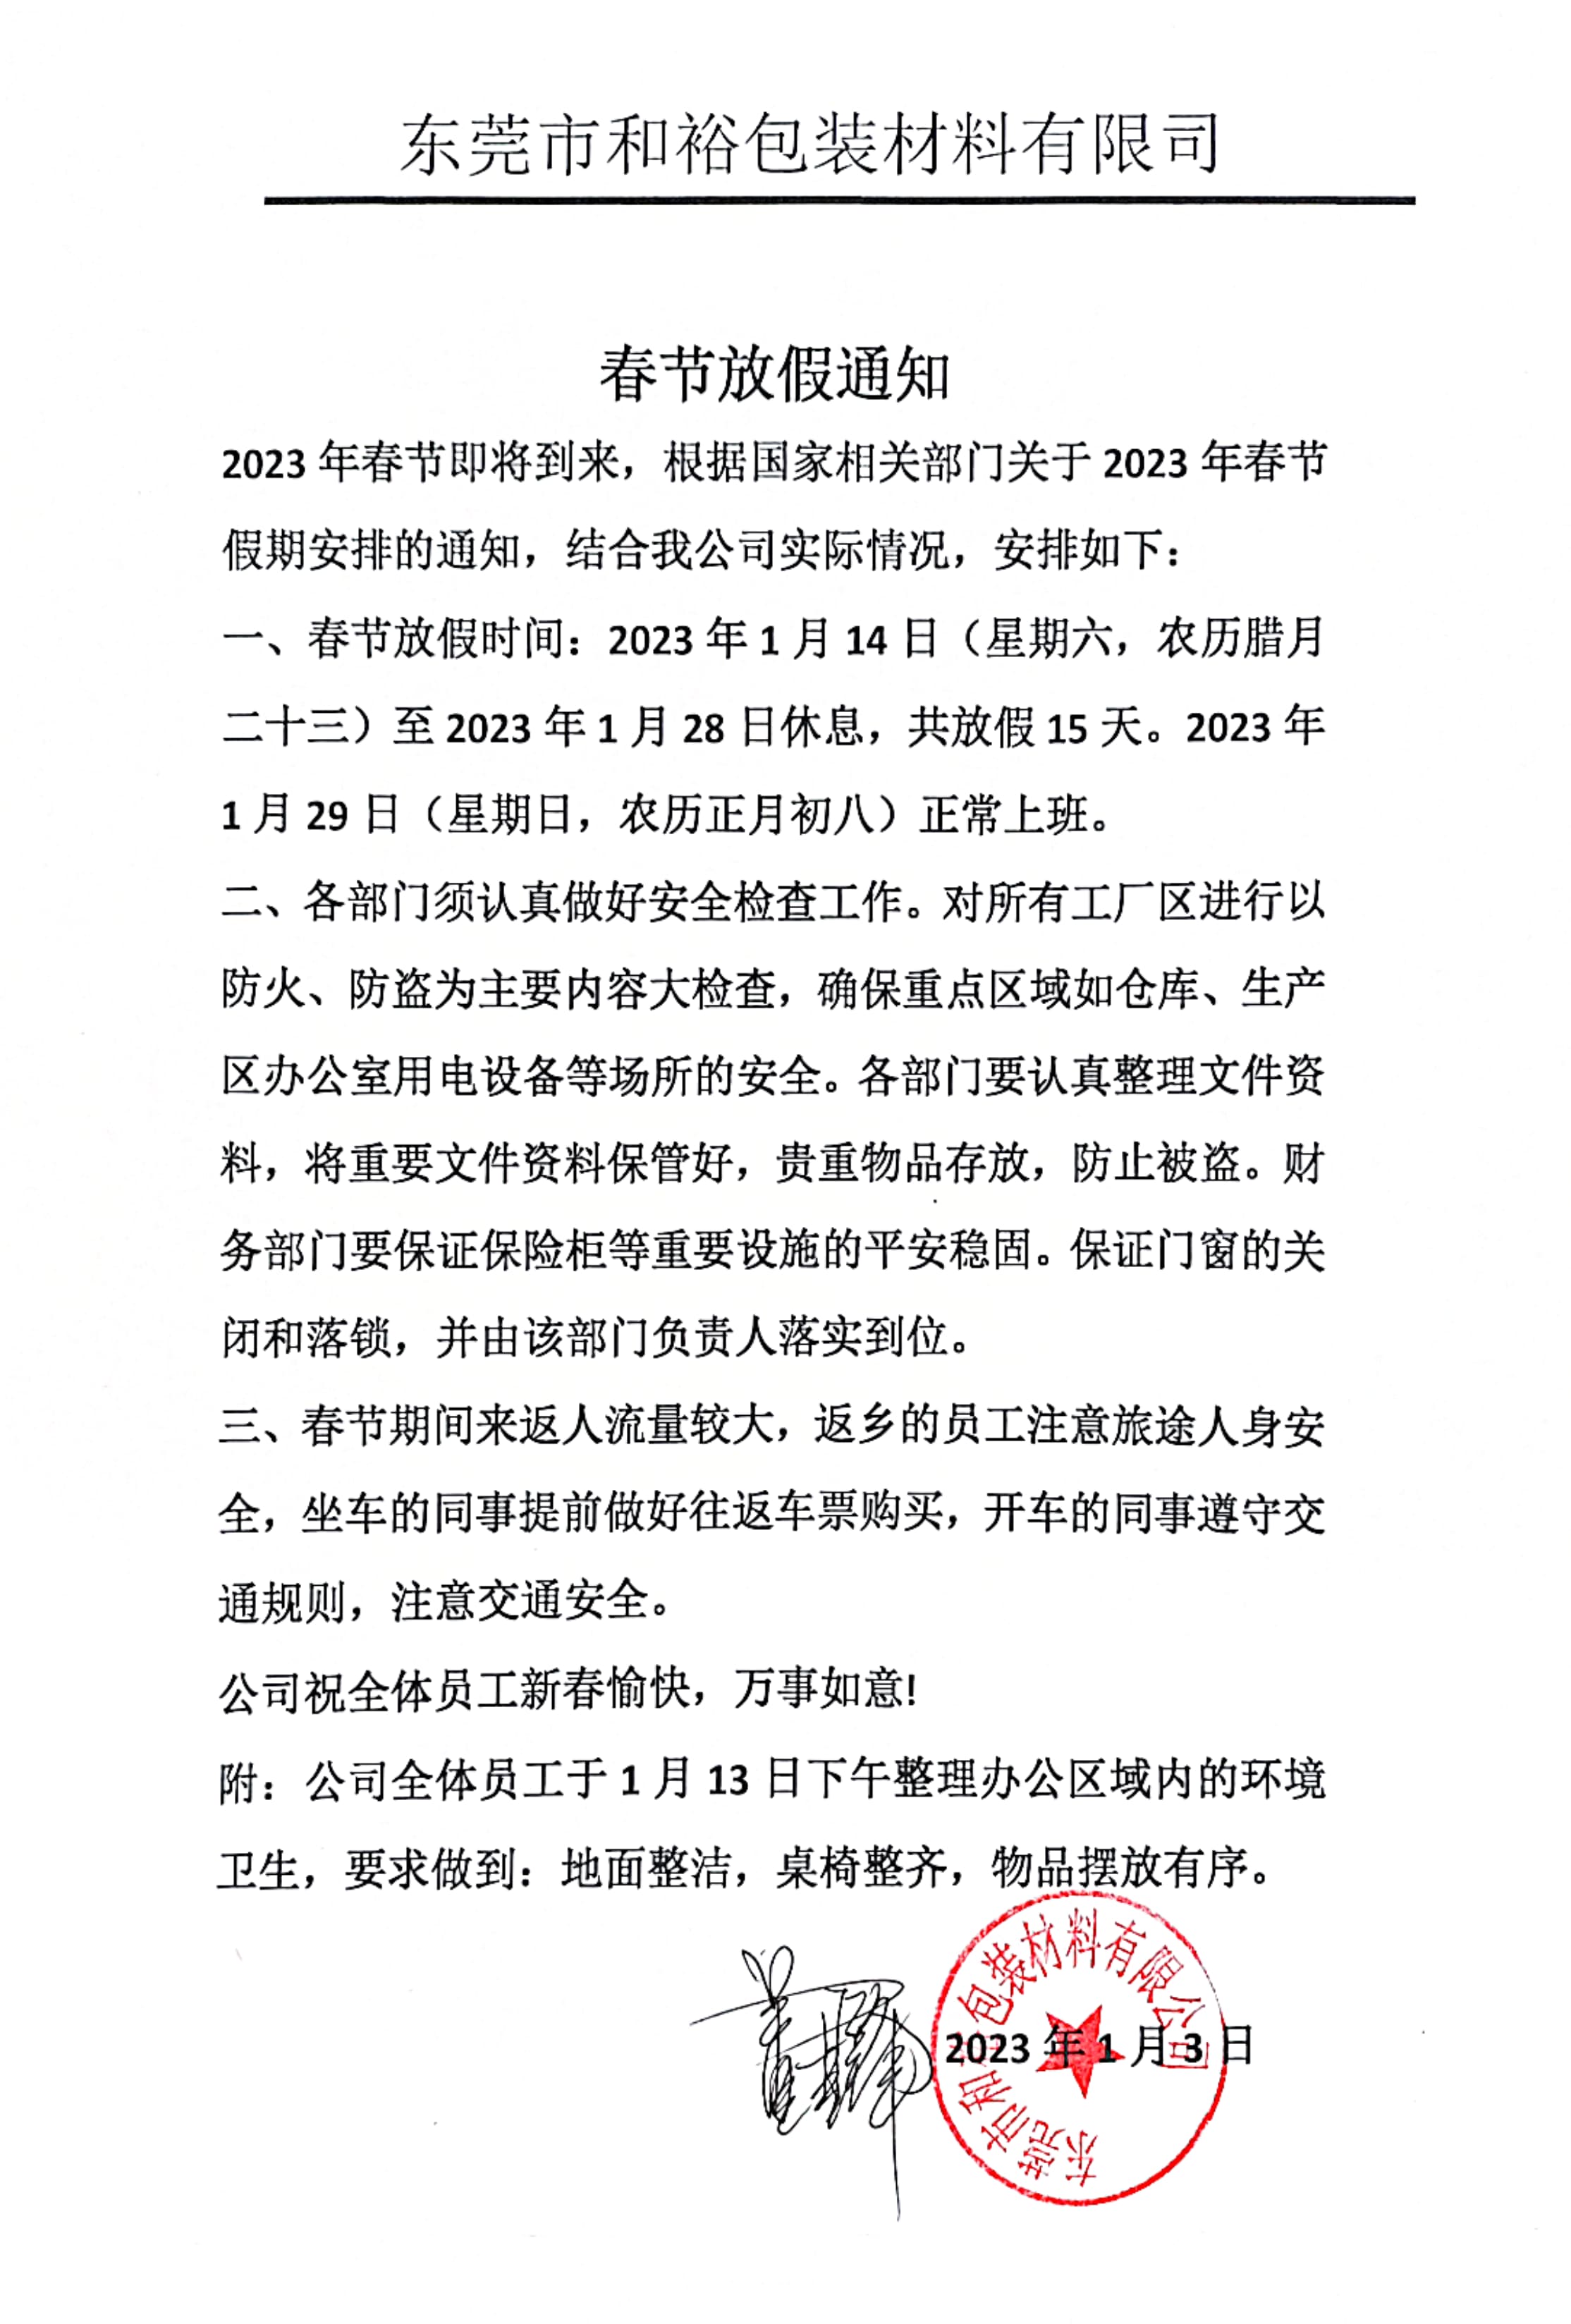 宁河区2023年和裕包装春节放假通知